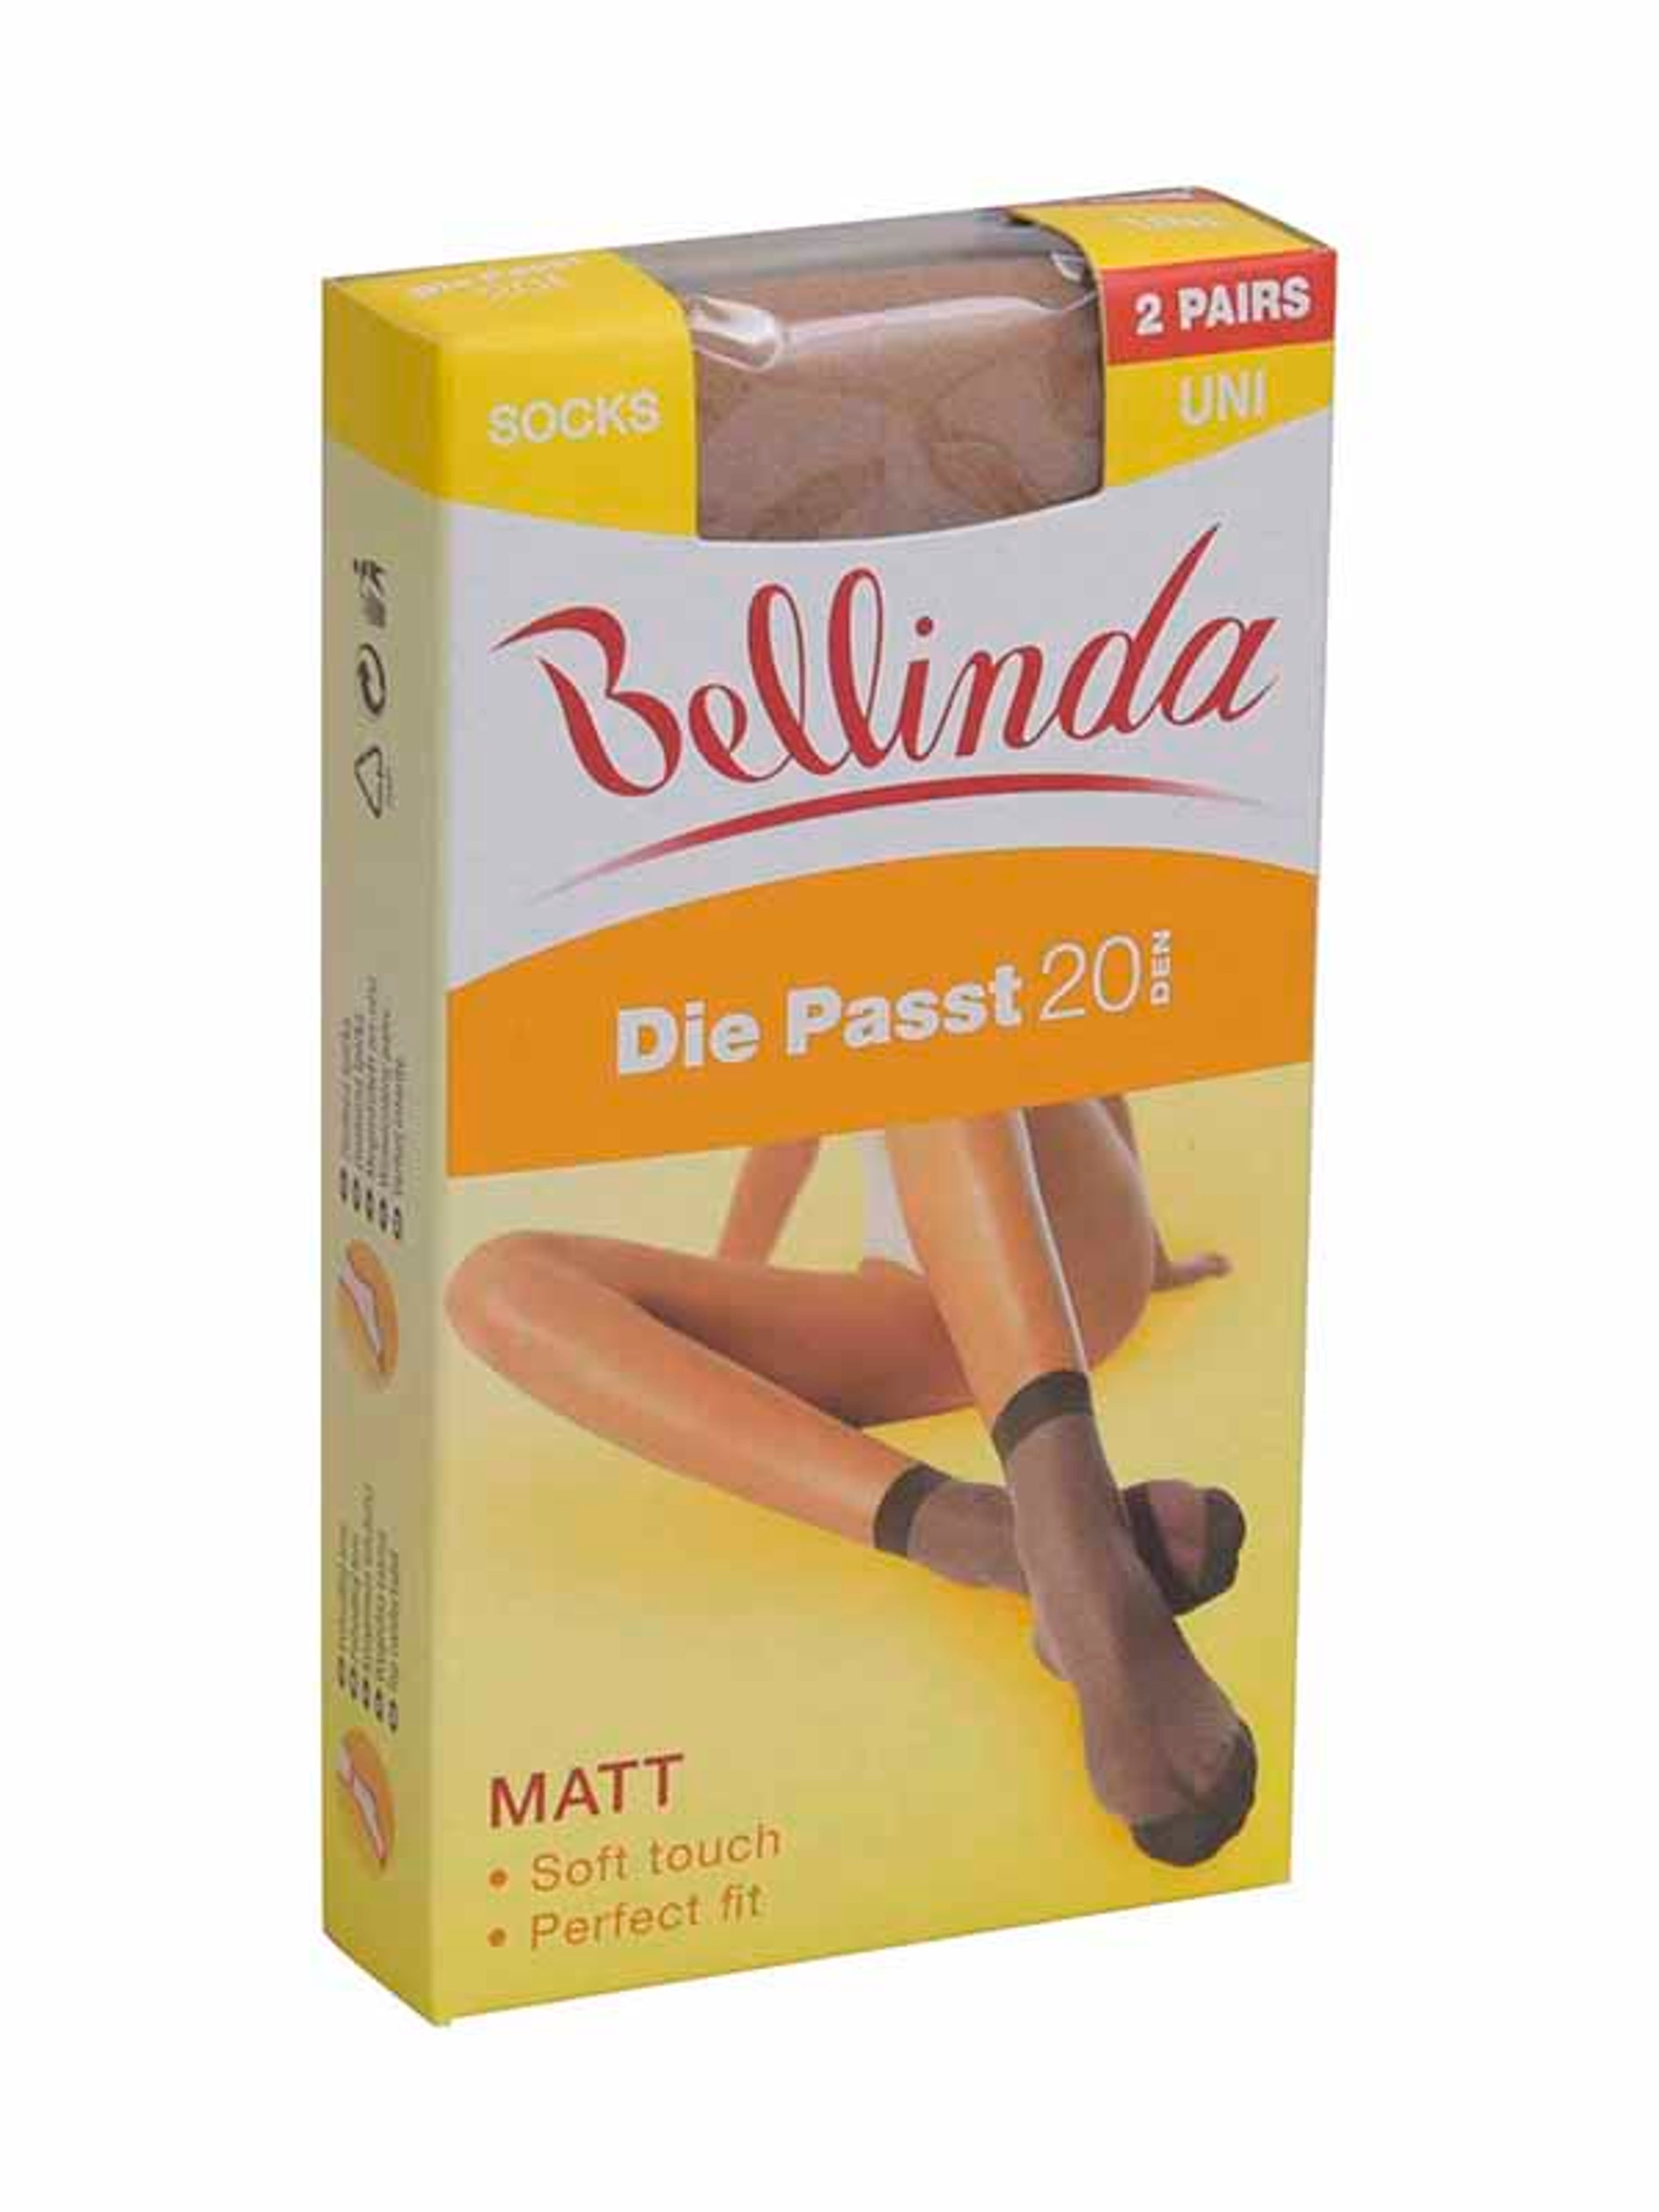 Bellinda Die Passt 20 Den Almond Bokafix - 1 db